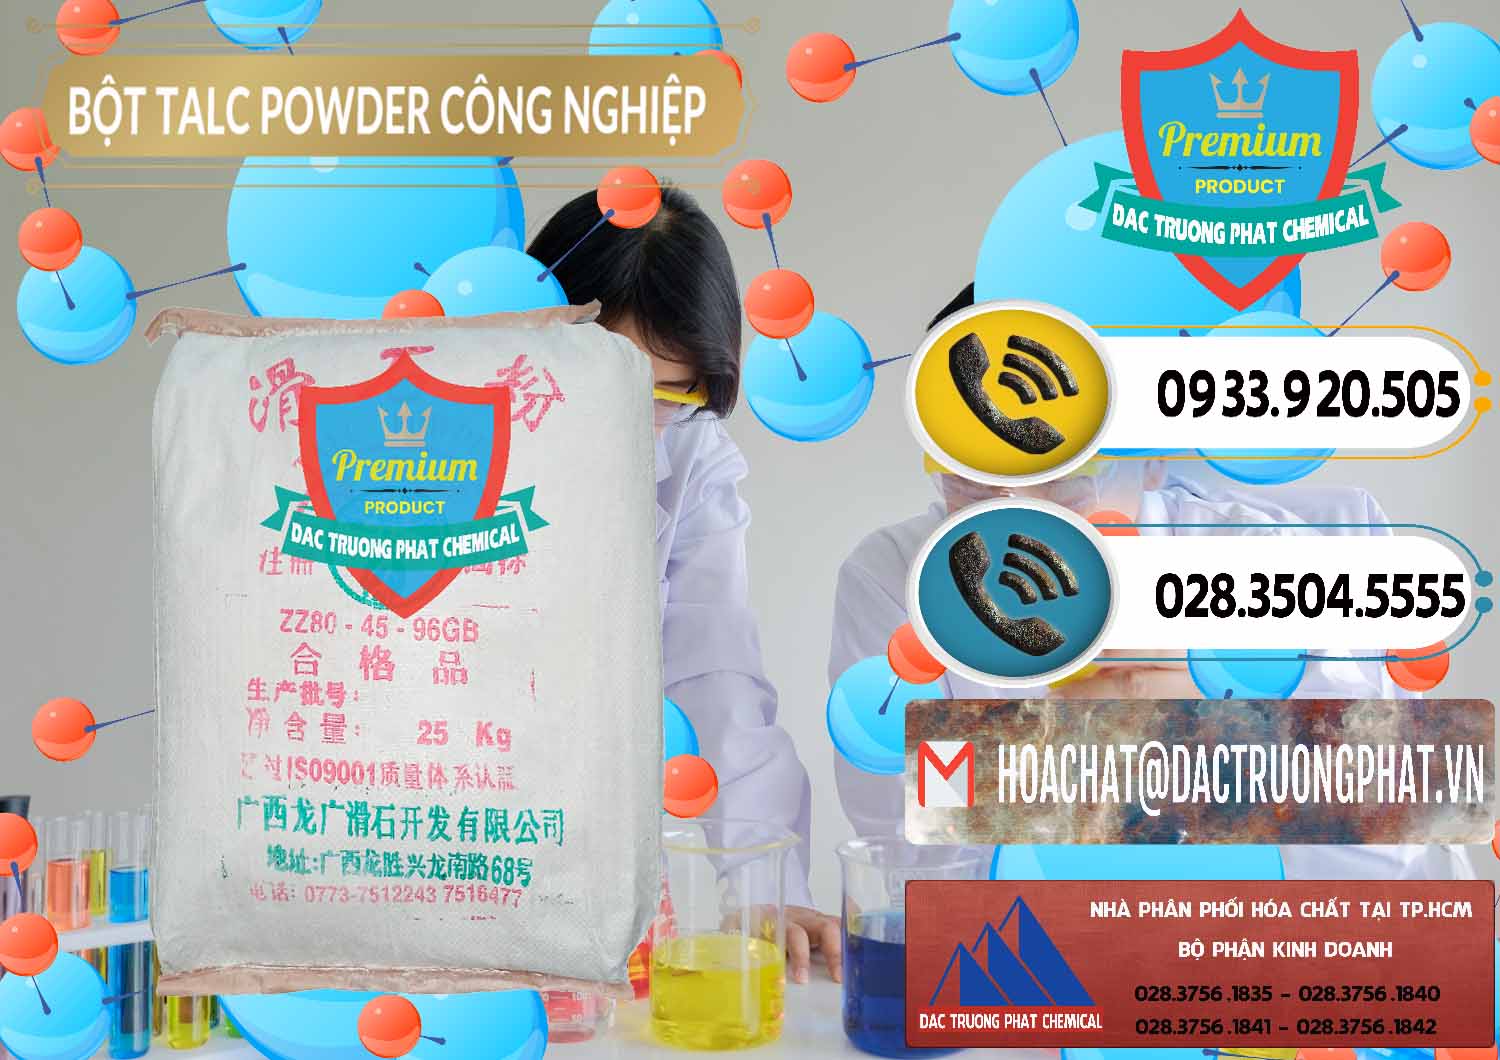 Chuyên bán & cung cấp Bột Talc Powder Công Nghiệp Trung Quốc China - 0037 - Nhập khẩu - phân phối hóa chất tại TP.HCM - hoachatdetnhuom.vn